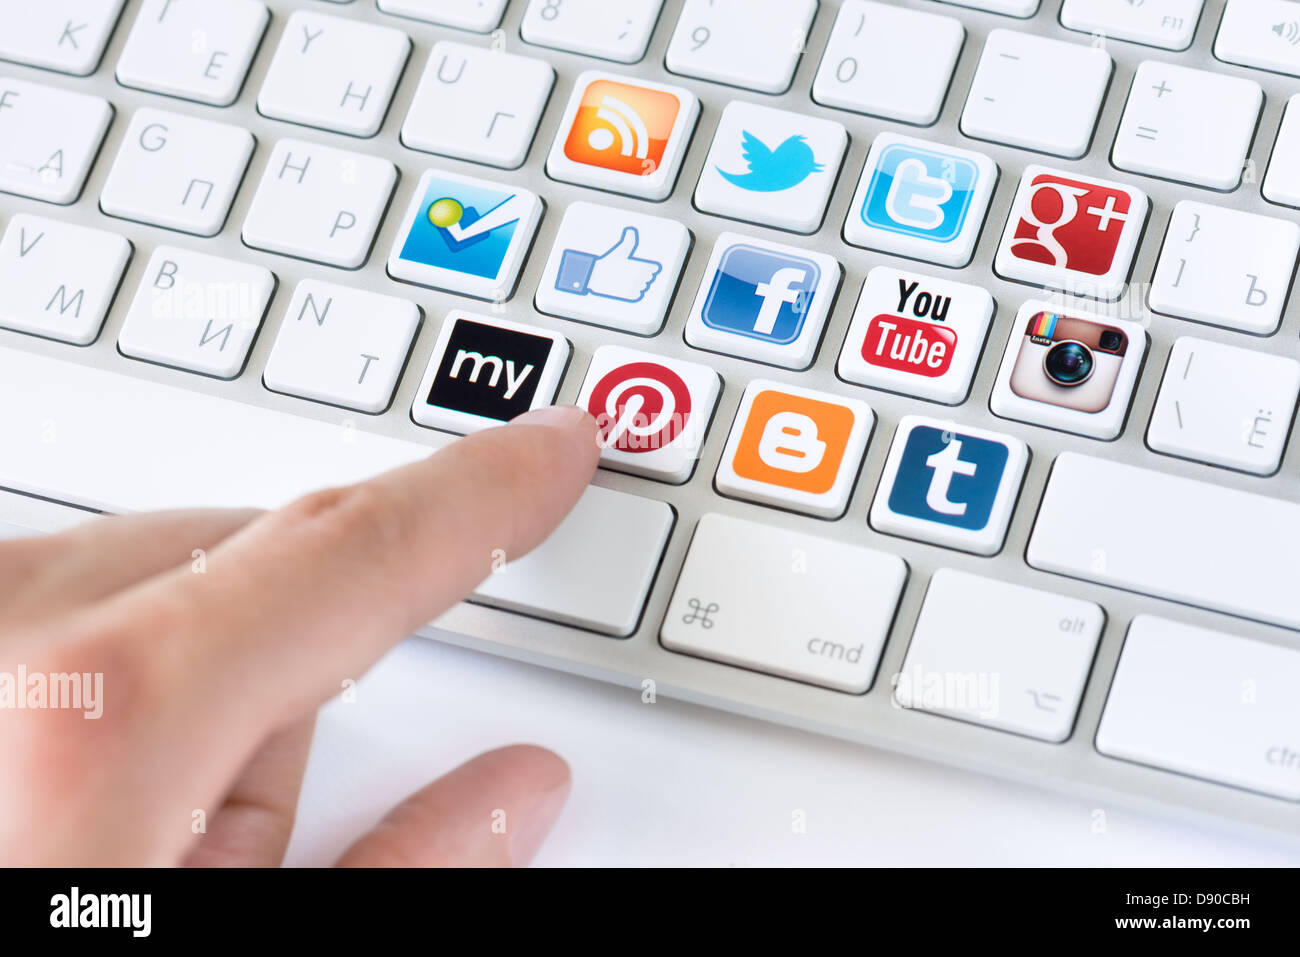 Puntamento a mano sulla tastiera con i social media logotipo raccolta di ben noto social network del marchio posto su pulsanti della tastiera Foto Stock